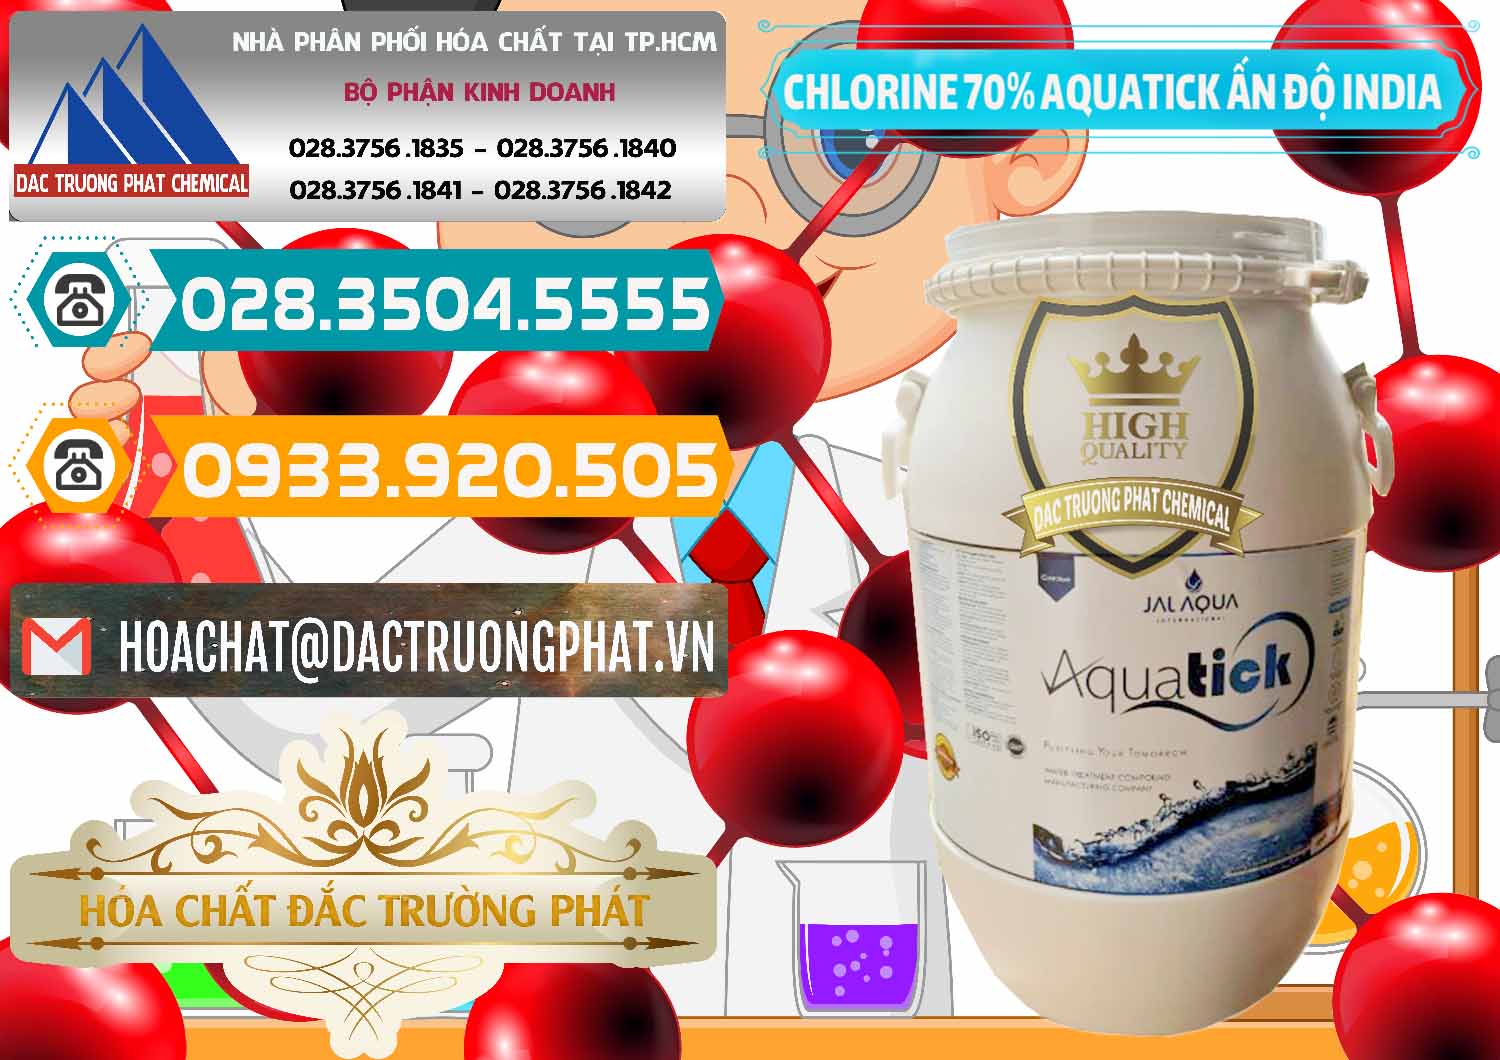 Cty bán và cung cấp Chlorine – Clorin 70% Aquatick Jal Aqua Ấn Độ India - 0215 - Nơi chuyên phân phối & kinh doanh hóa chất tại TP.HCM - congtyhoachat.vn